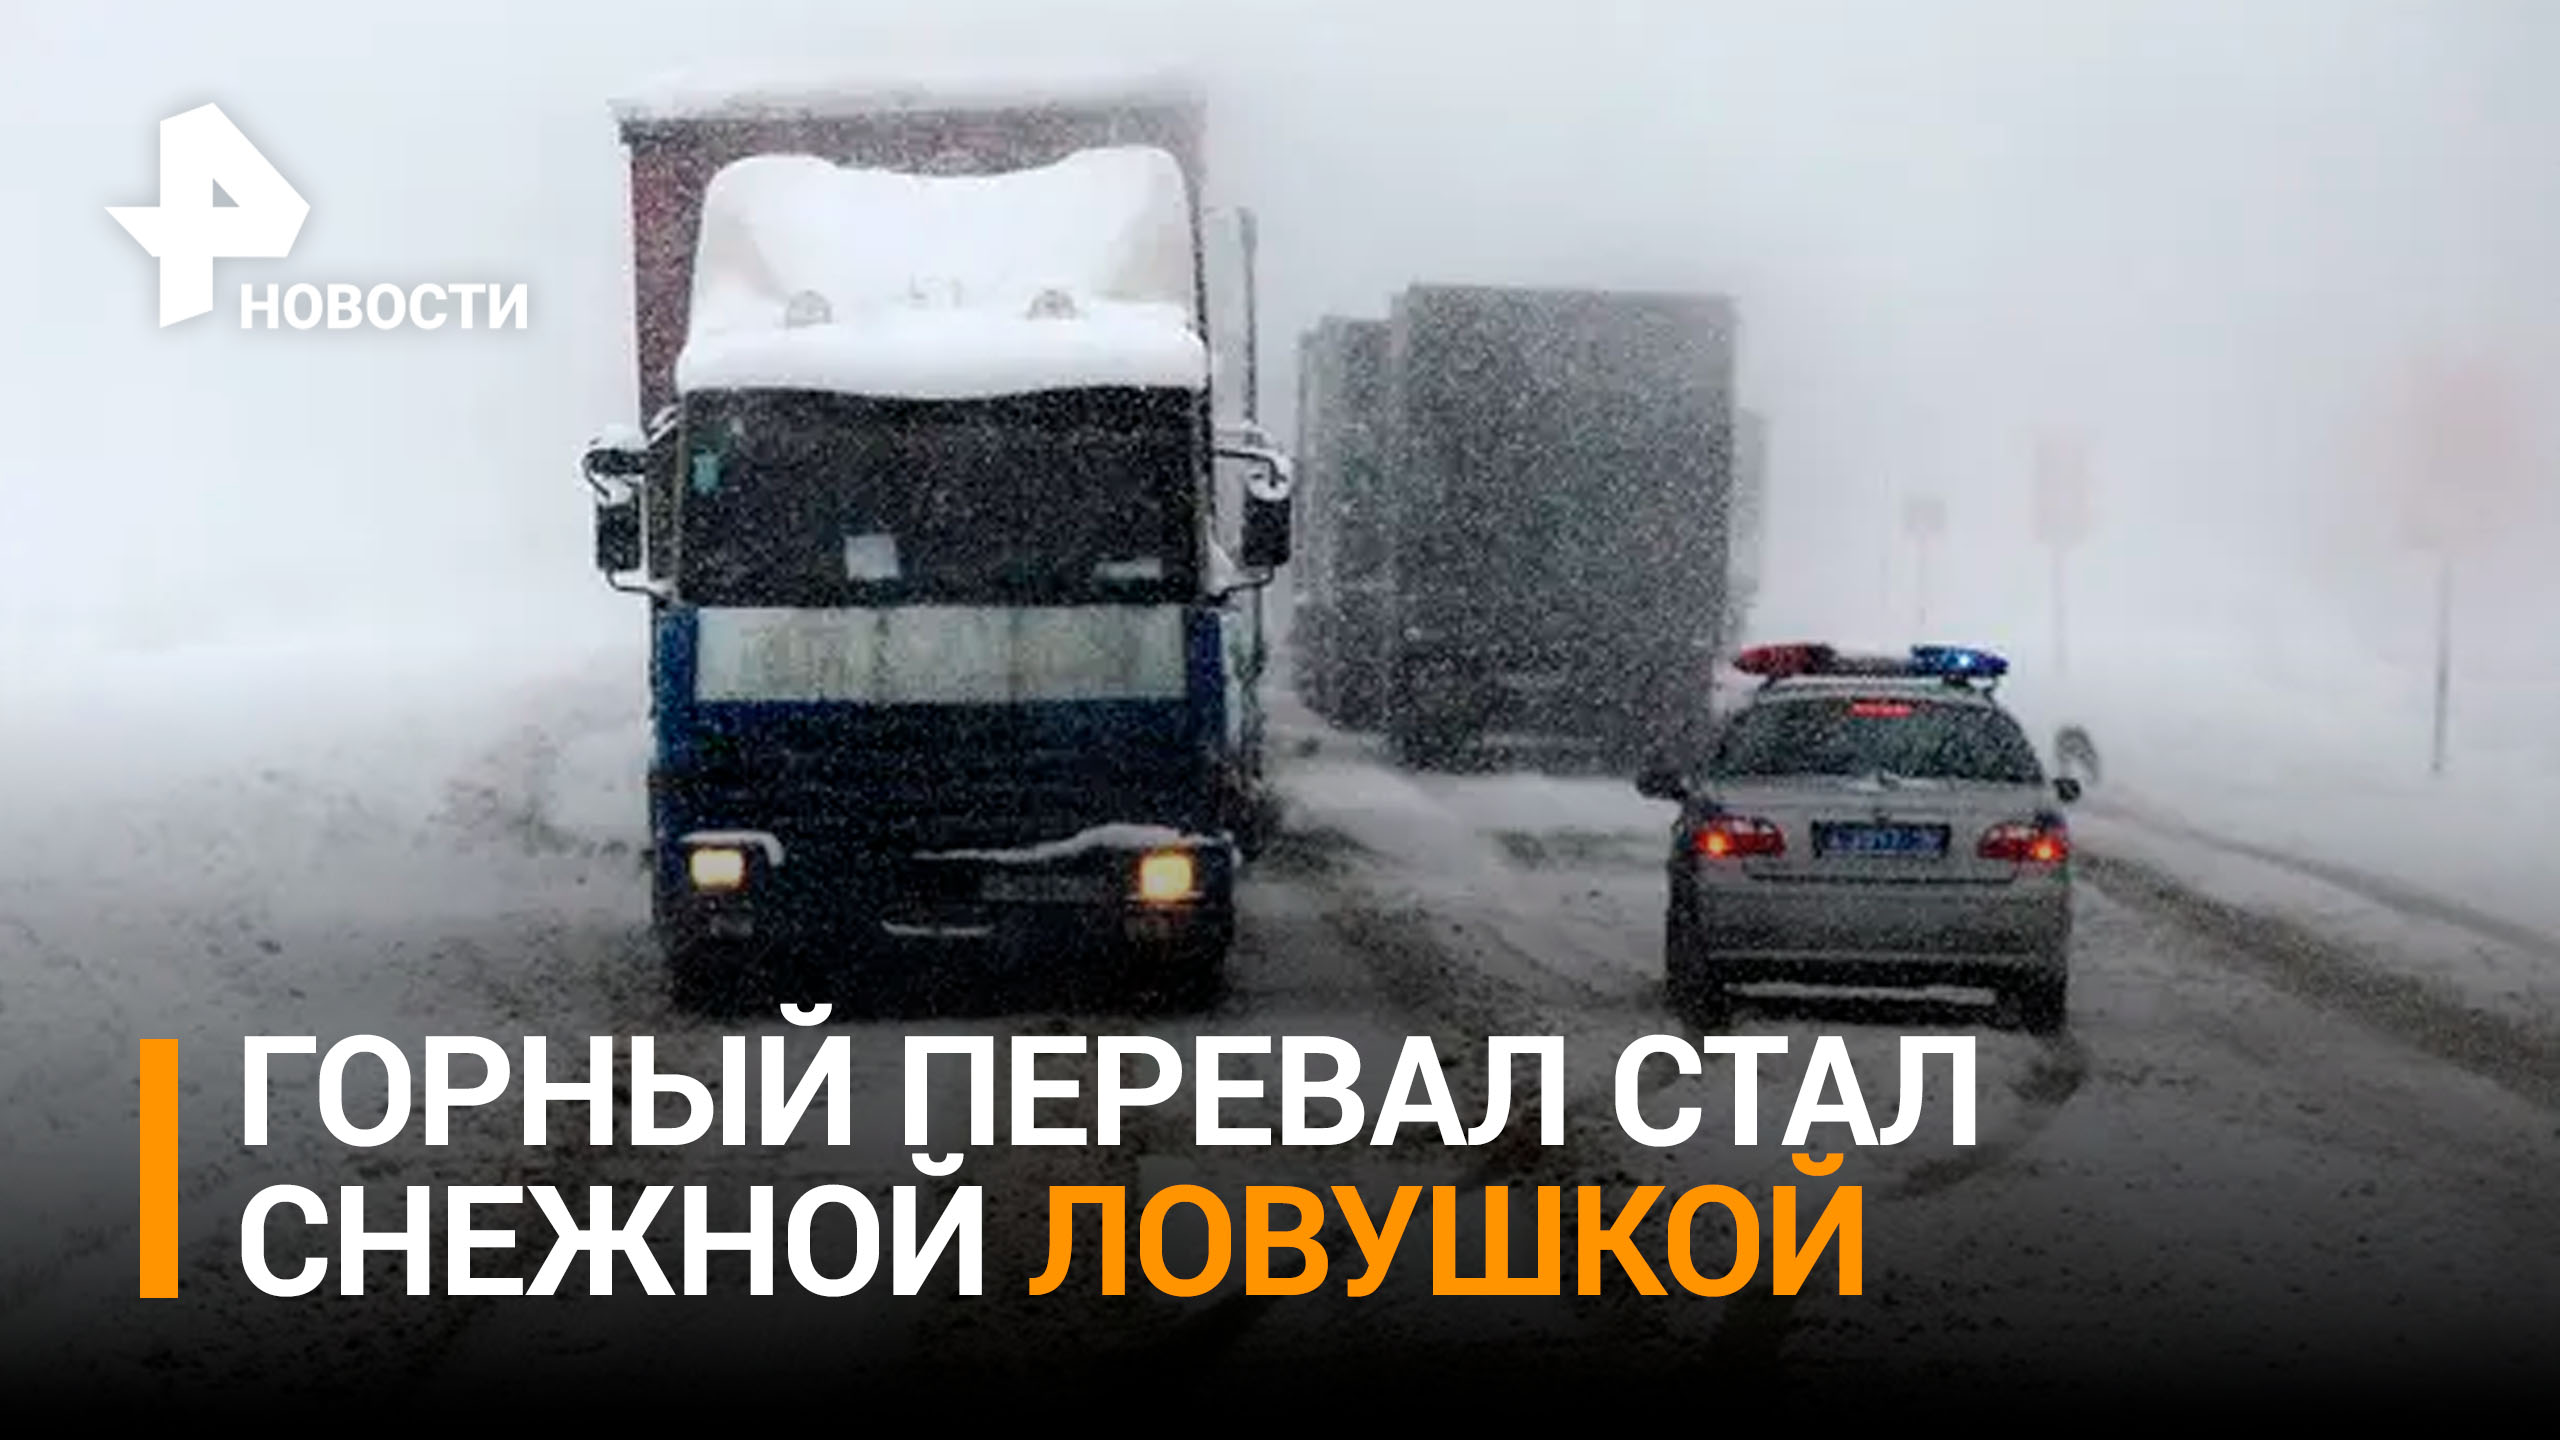 Десятки фур застряли на горном перевале в Якутии из-за аномального снегопада / РЕН Новости